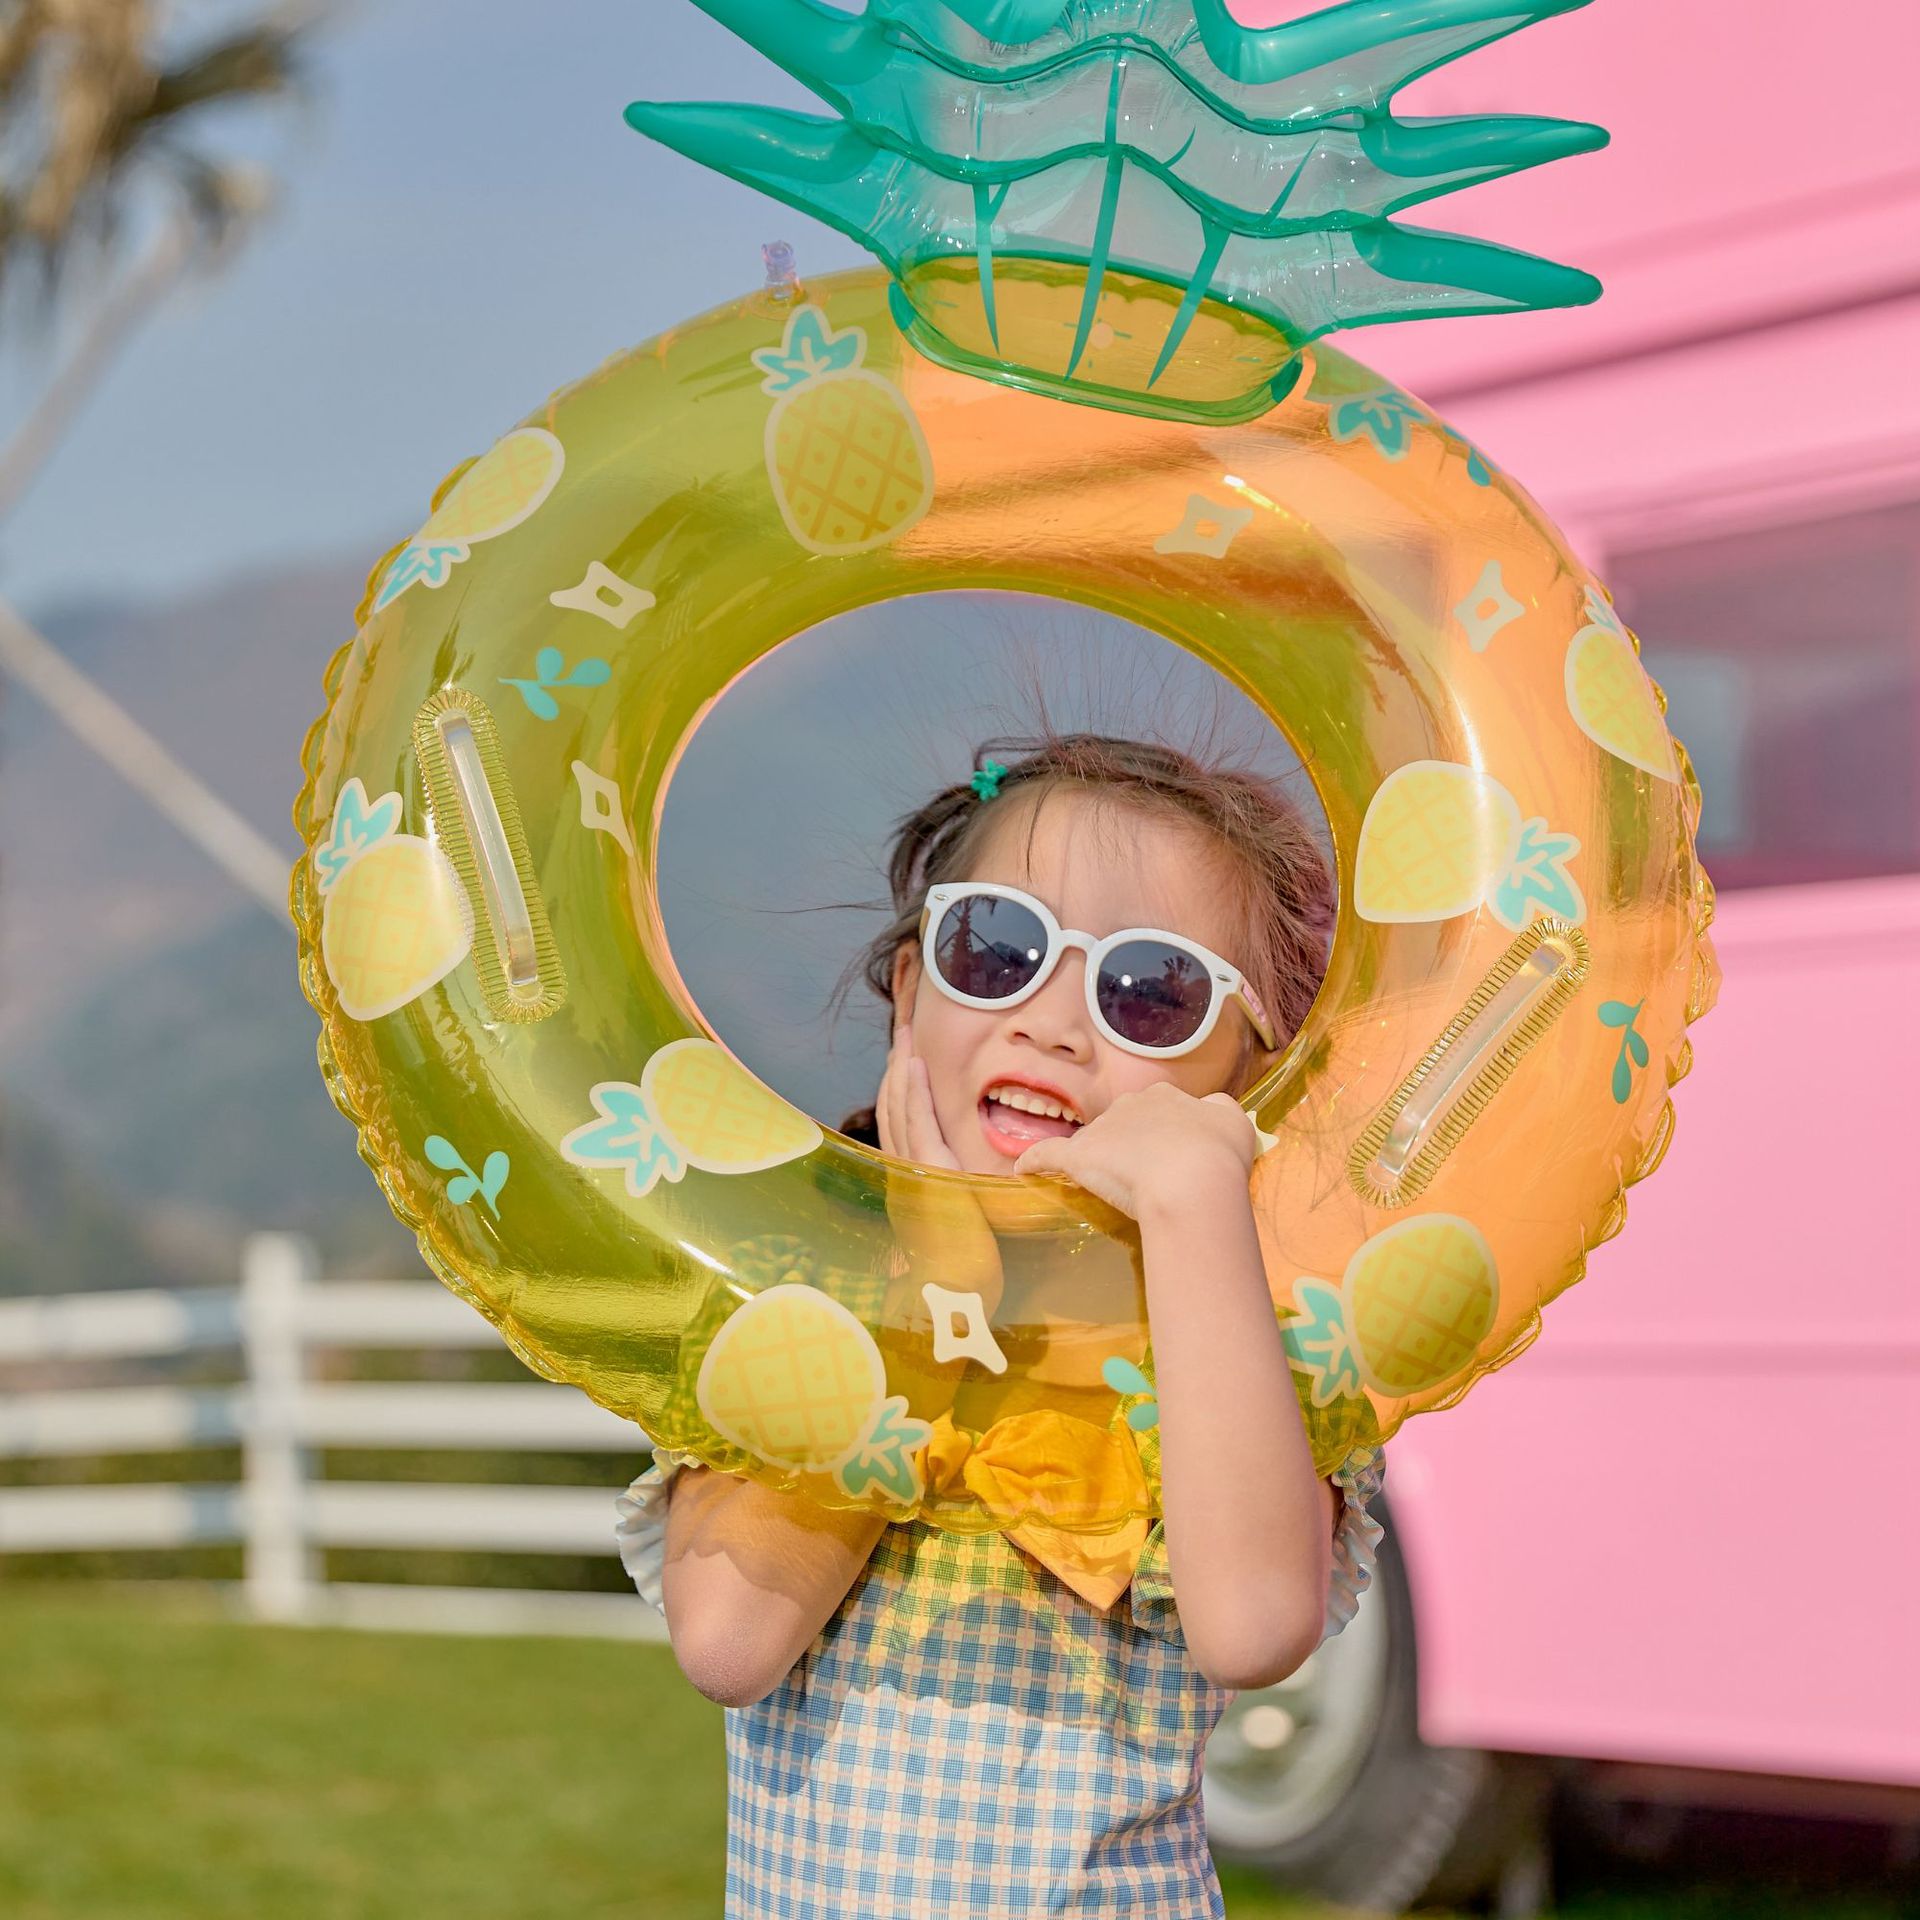 2024夏   ハワイ   子供浮き輪   ビーチ用   水遊び用品   外遊び    海水浴  水泳  果物  1 ~ 5歳  3色